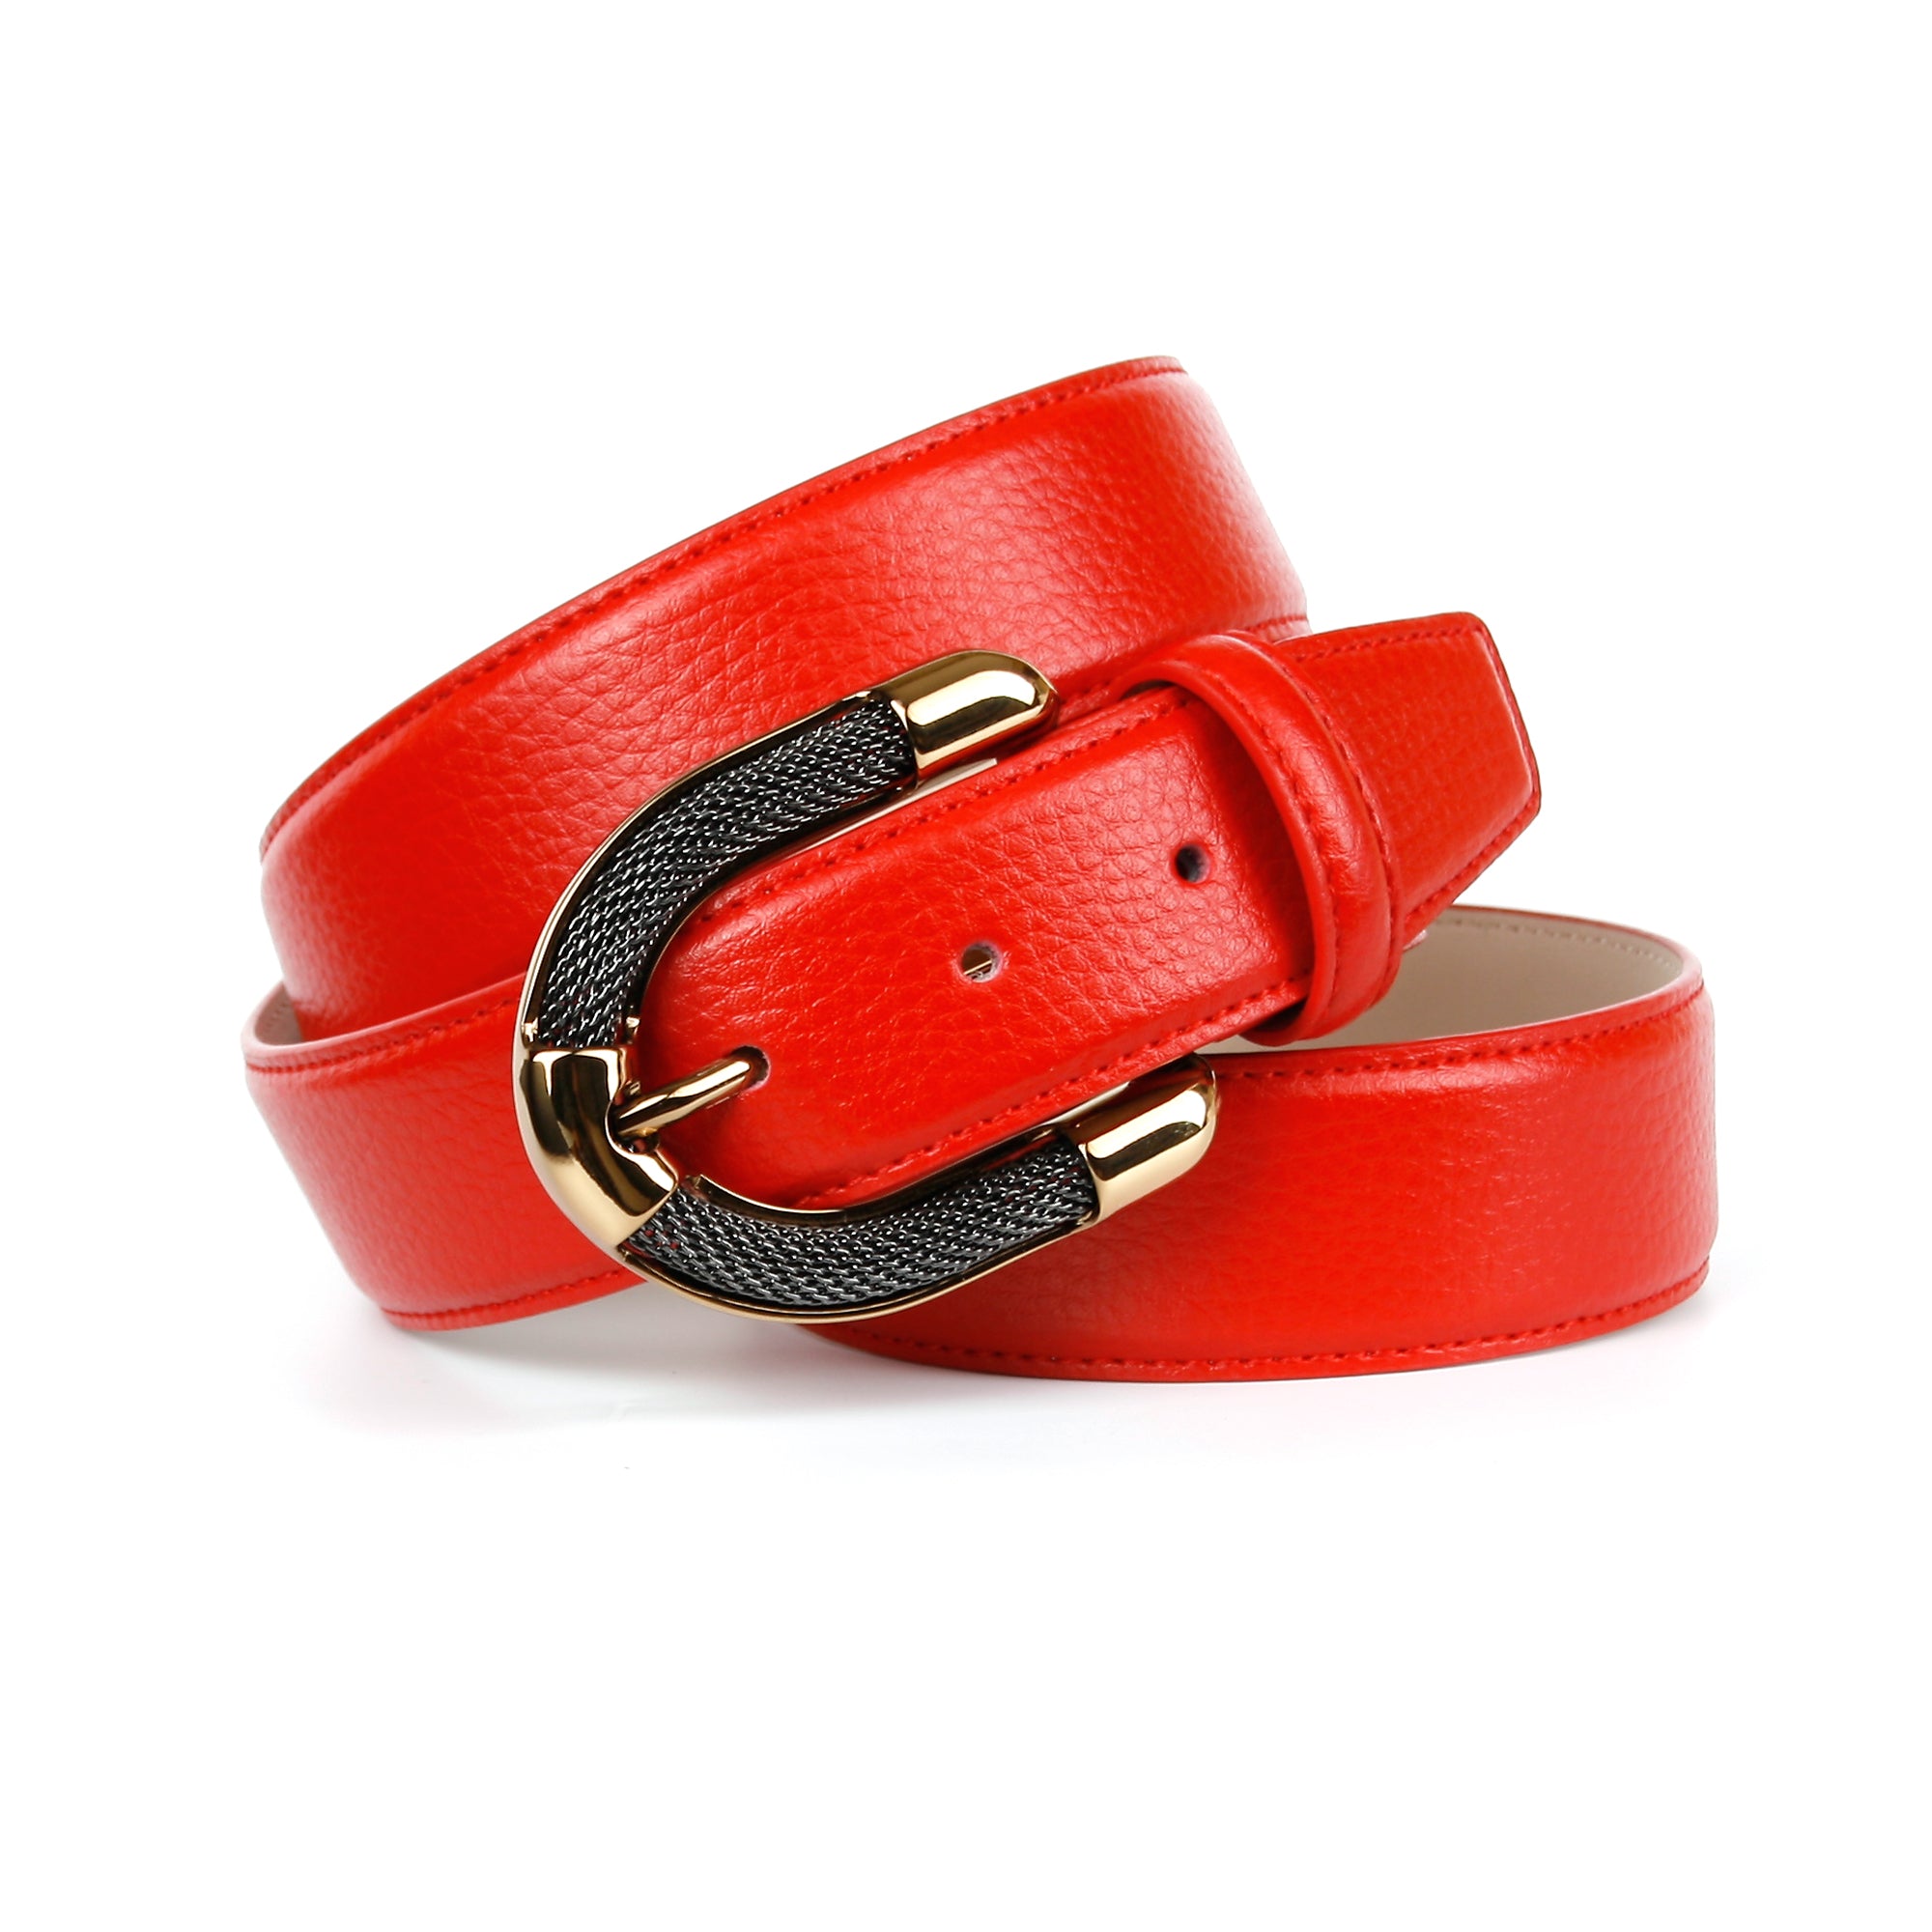 Brandneu Femininer Ledergürtel in Rot mit anthonicrown Schmuck-Schließe – aufwendiger